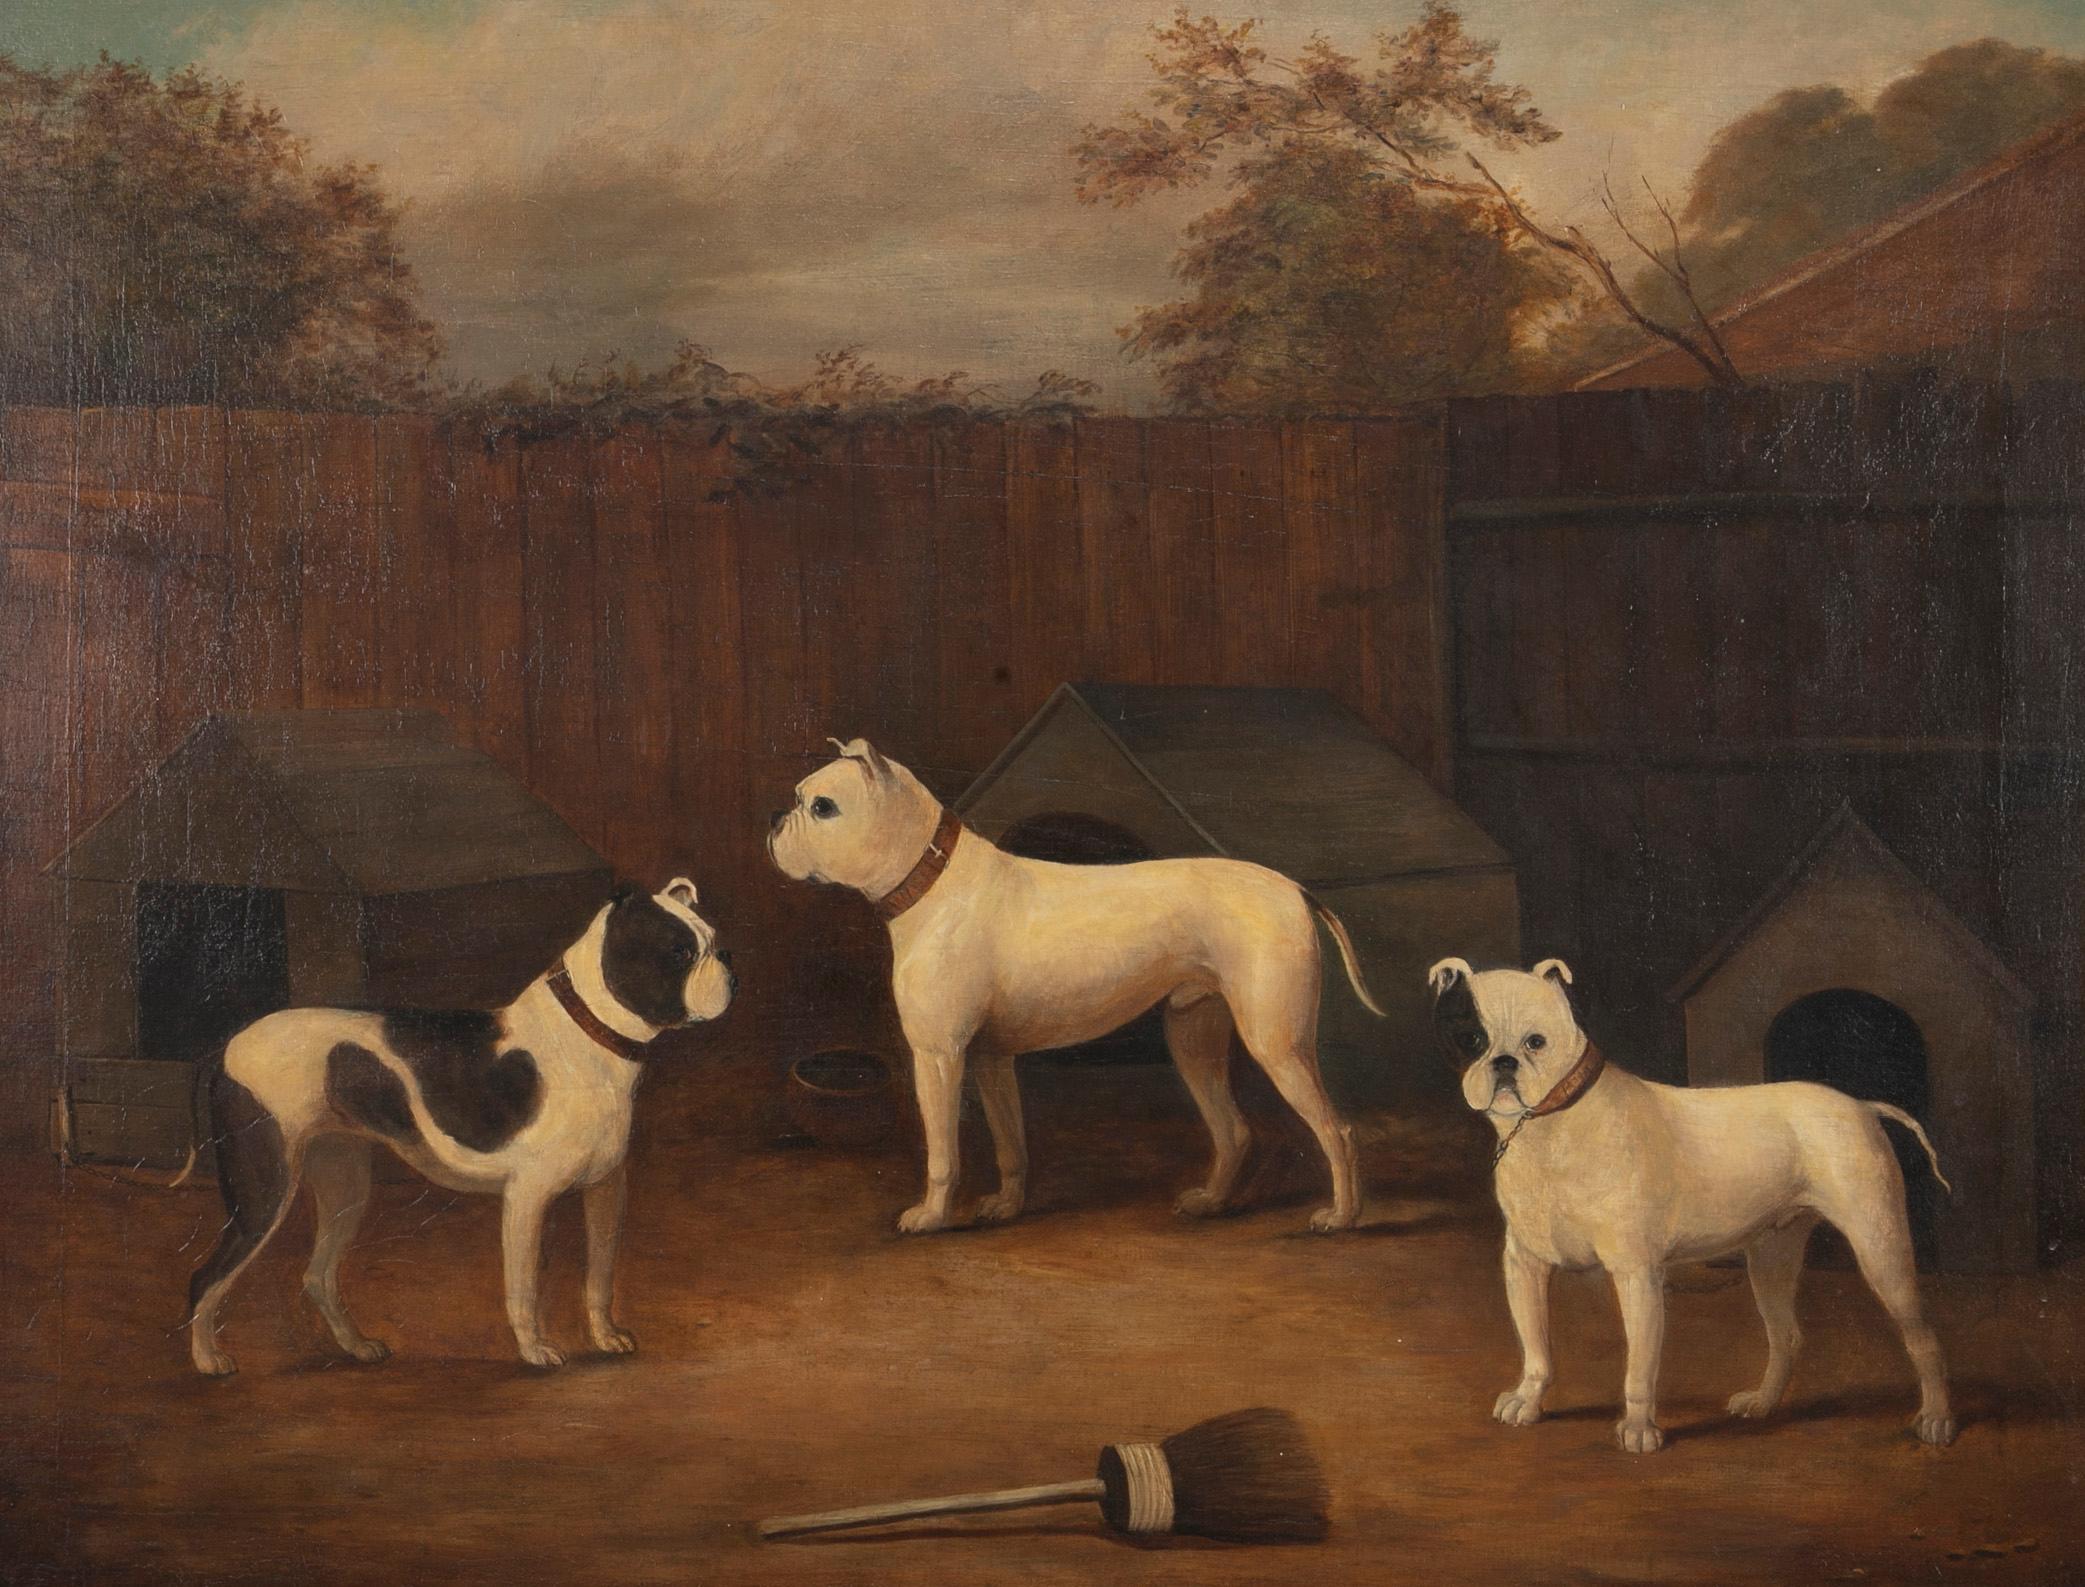 Huile sur toile du début du 19e siècle représentant trois chiens par l'artiste britannique bien connu James Ward (1769-1859), connu pour ses peintures de chevaux et de chiens pendant le premier quart du 19e siècle, vers 1800-1815. Faussement signé. 